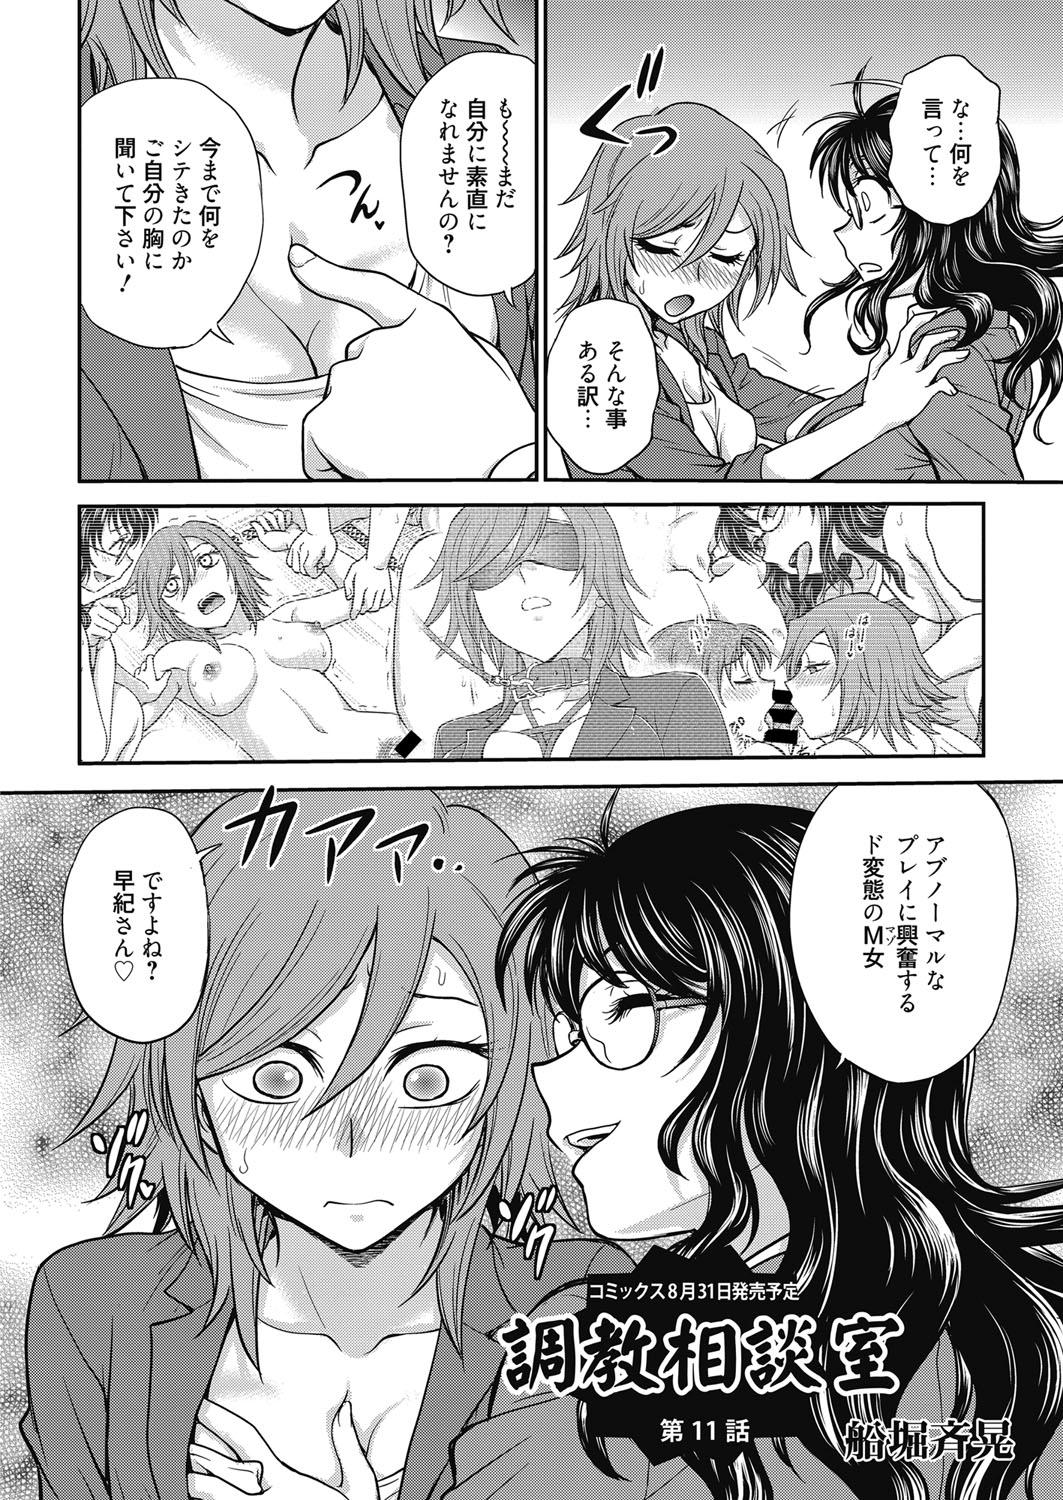 Horny Web Manga Bangaichi Vol. 11 Banheiro - Page 3